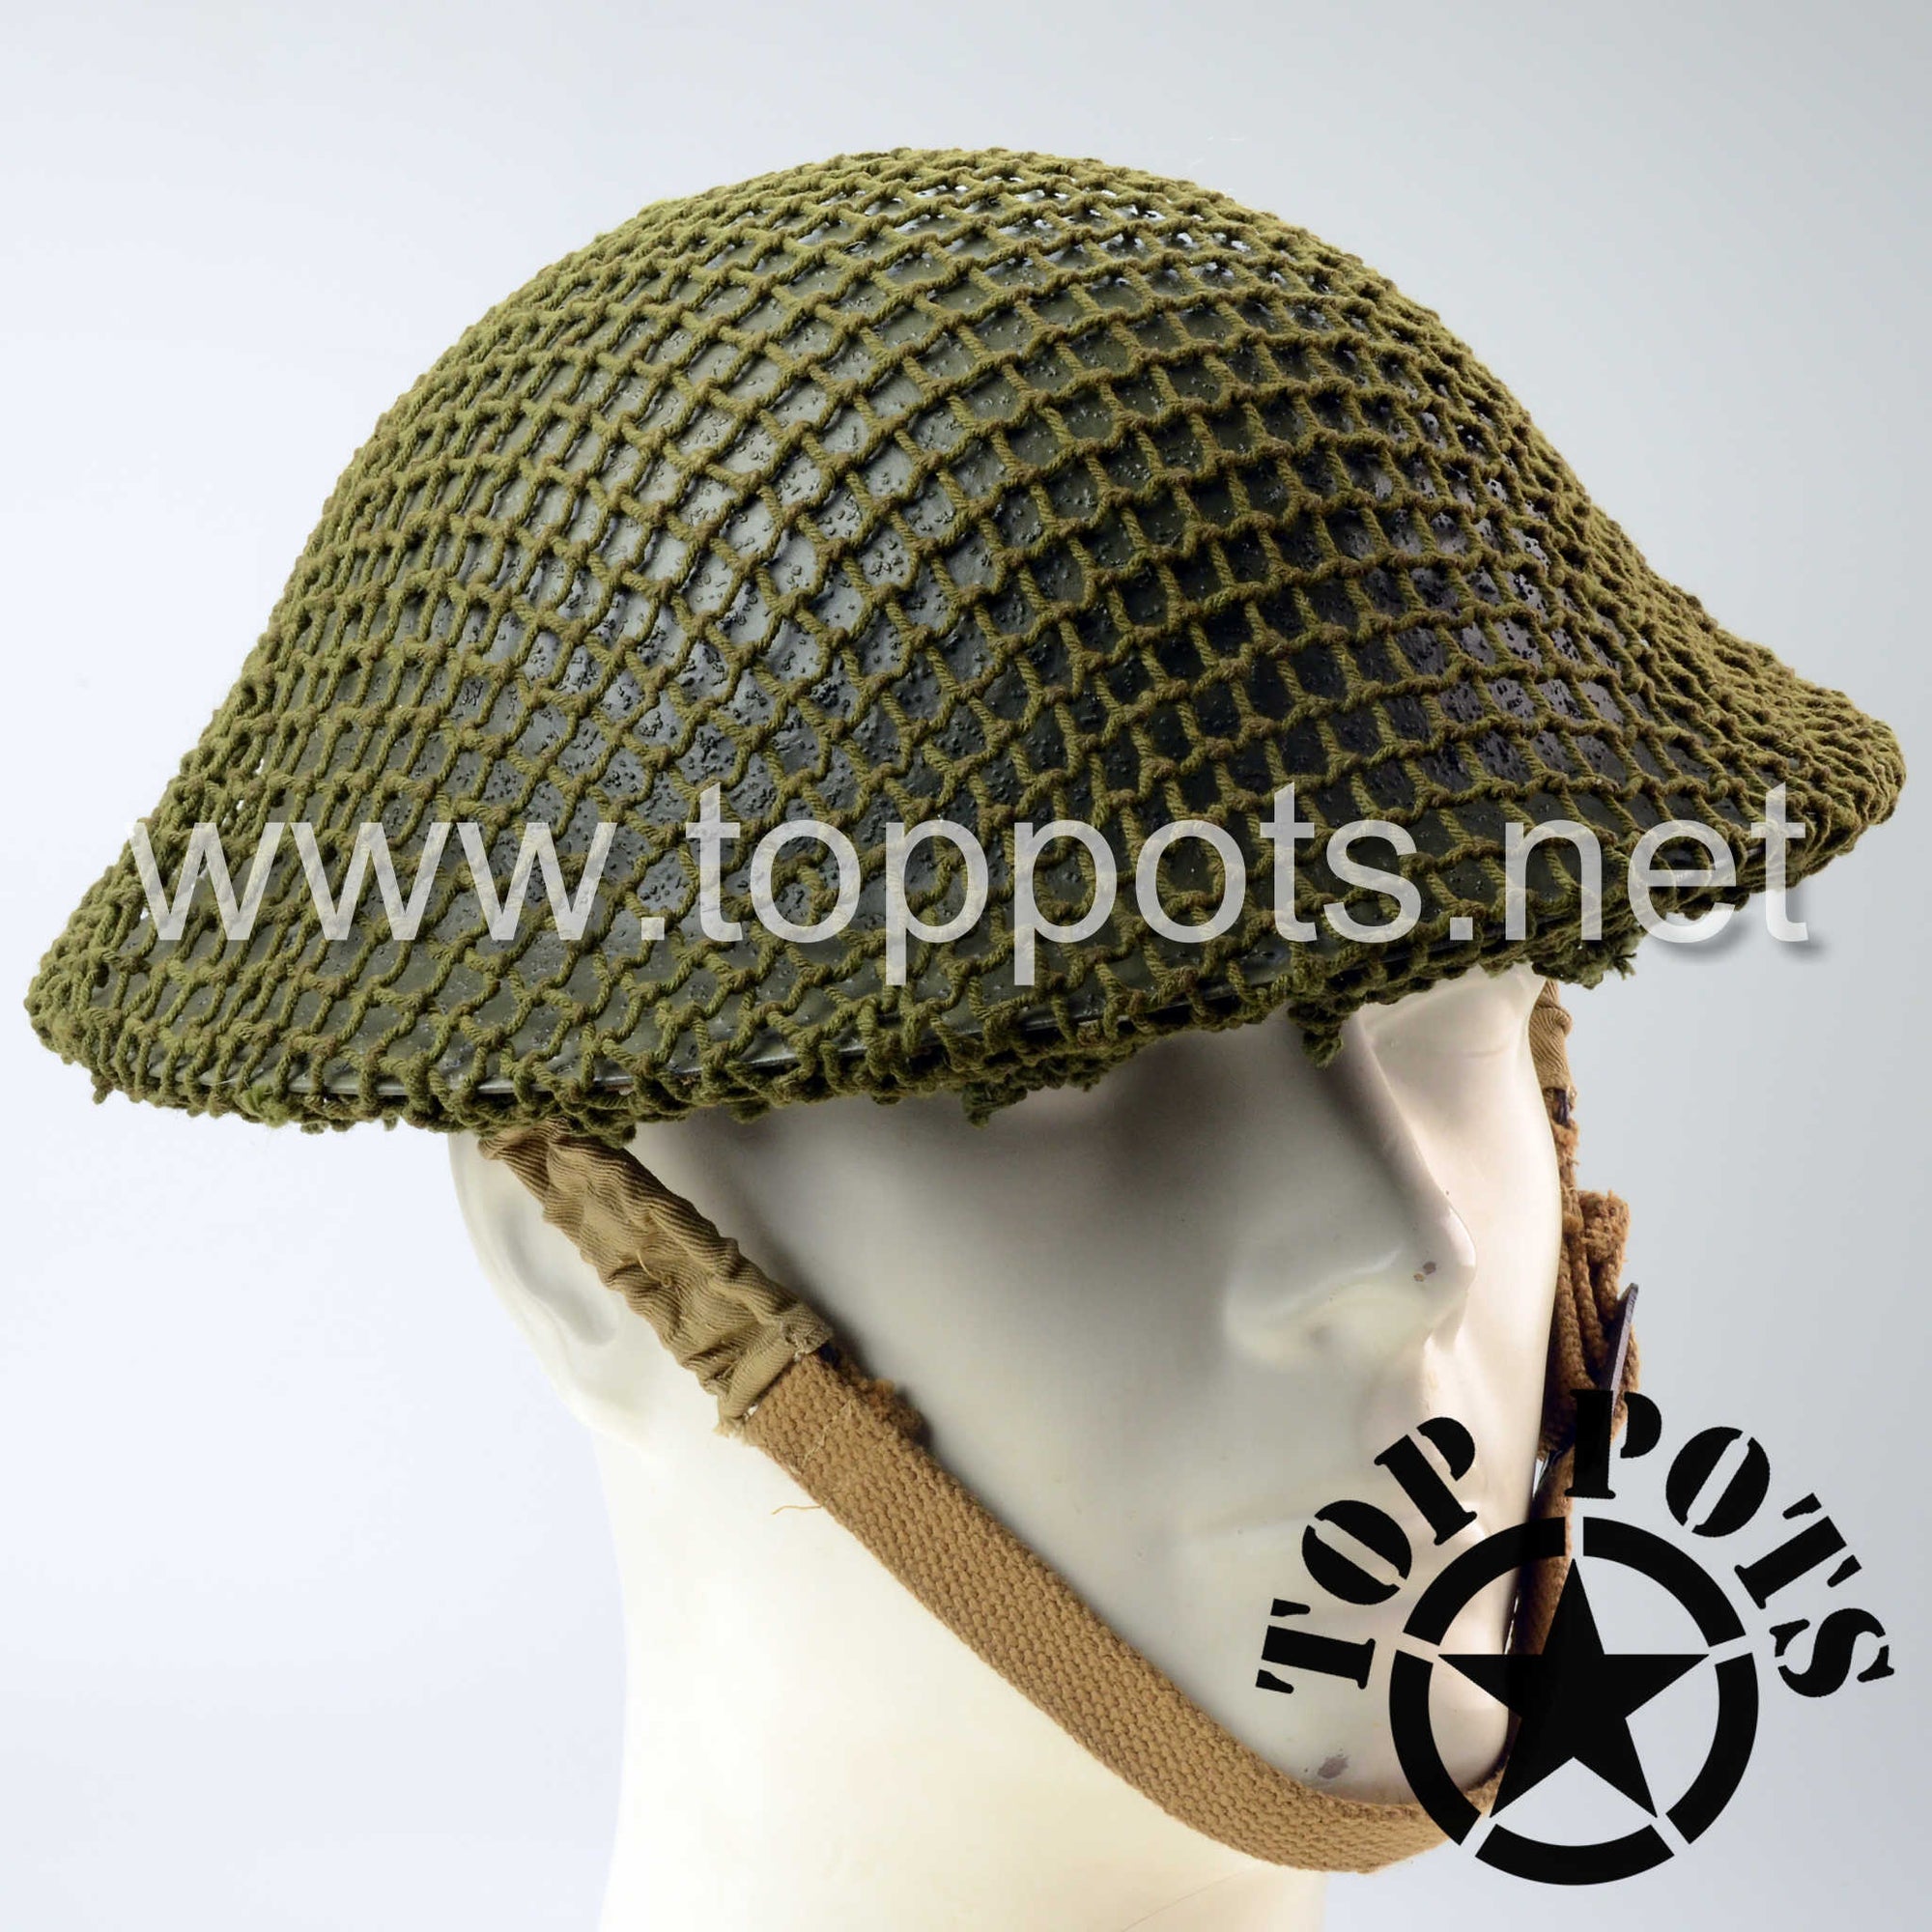 WWII British Army MKII Brodie Helmet and Liner Restoration Service